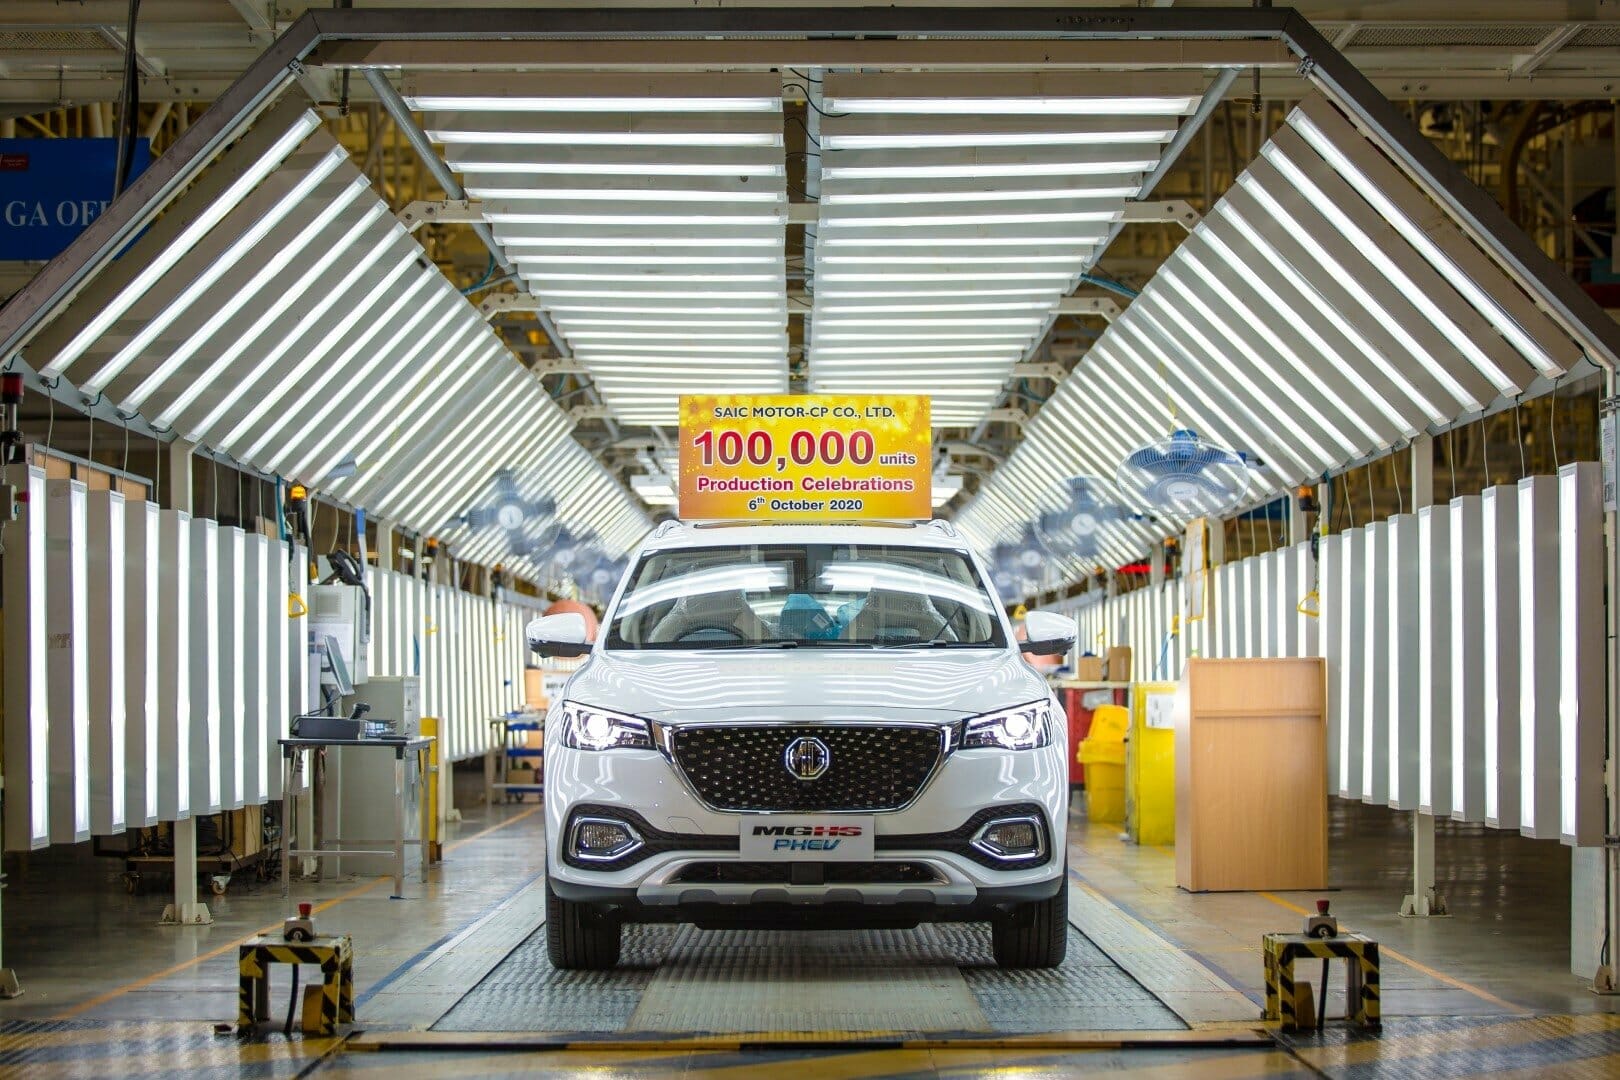 MG ฉลองยอดการผลิตรถยนต์ในประเทศไทย ครบ 100,000 คัน ตอกย้ำภาพโรงงานศูนย์กลางการผลิตรถยนต์พวงมาลัยขวาของอาเซียน 5